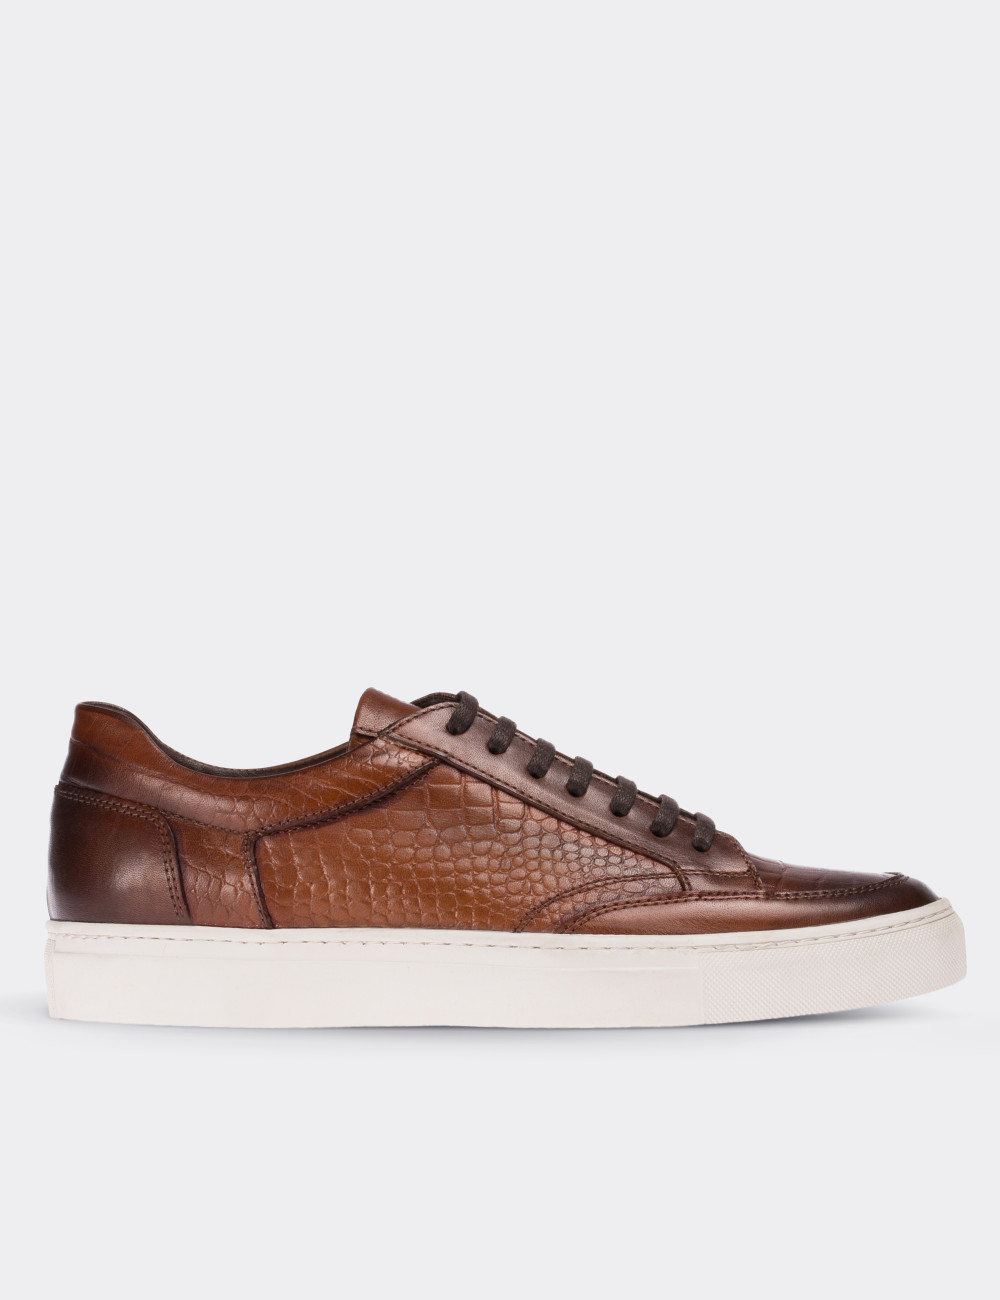 Tan  Leather Sneakers - 01629MTBAC01